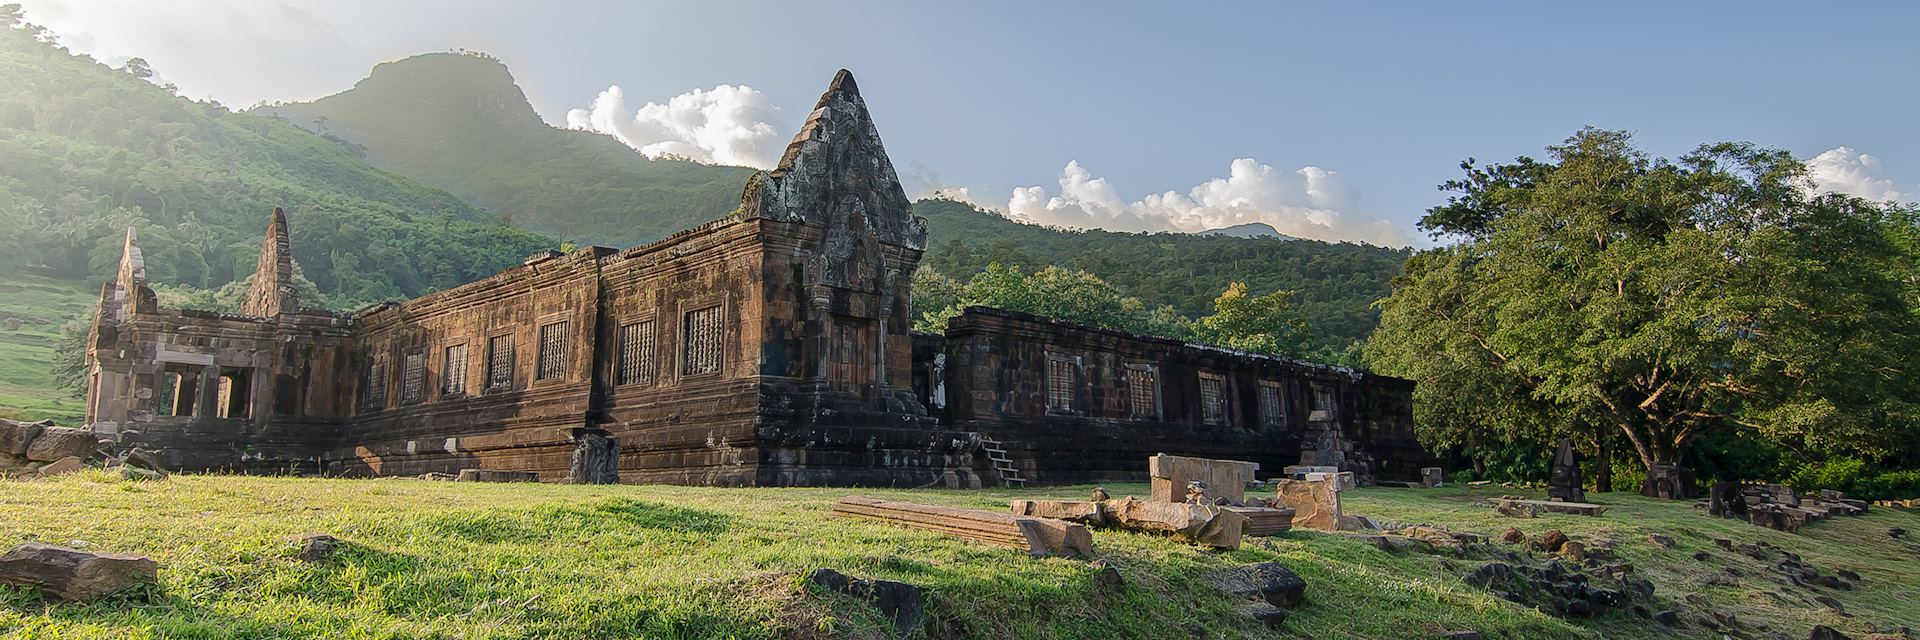 UNESCO site of Wat Phou